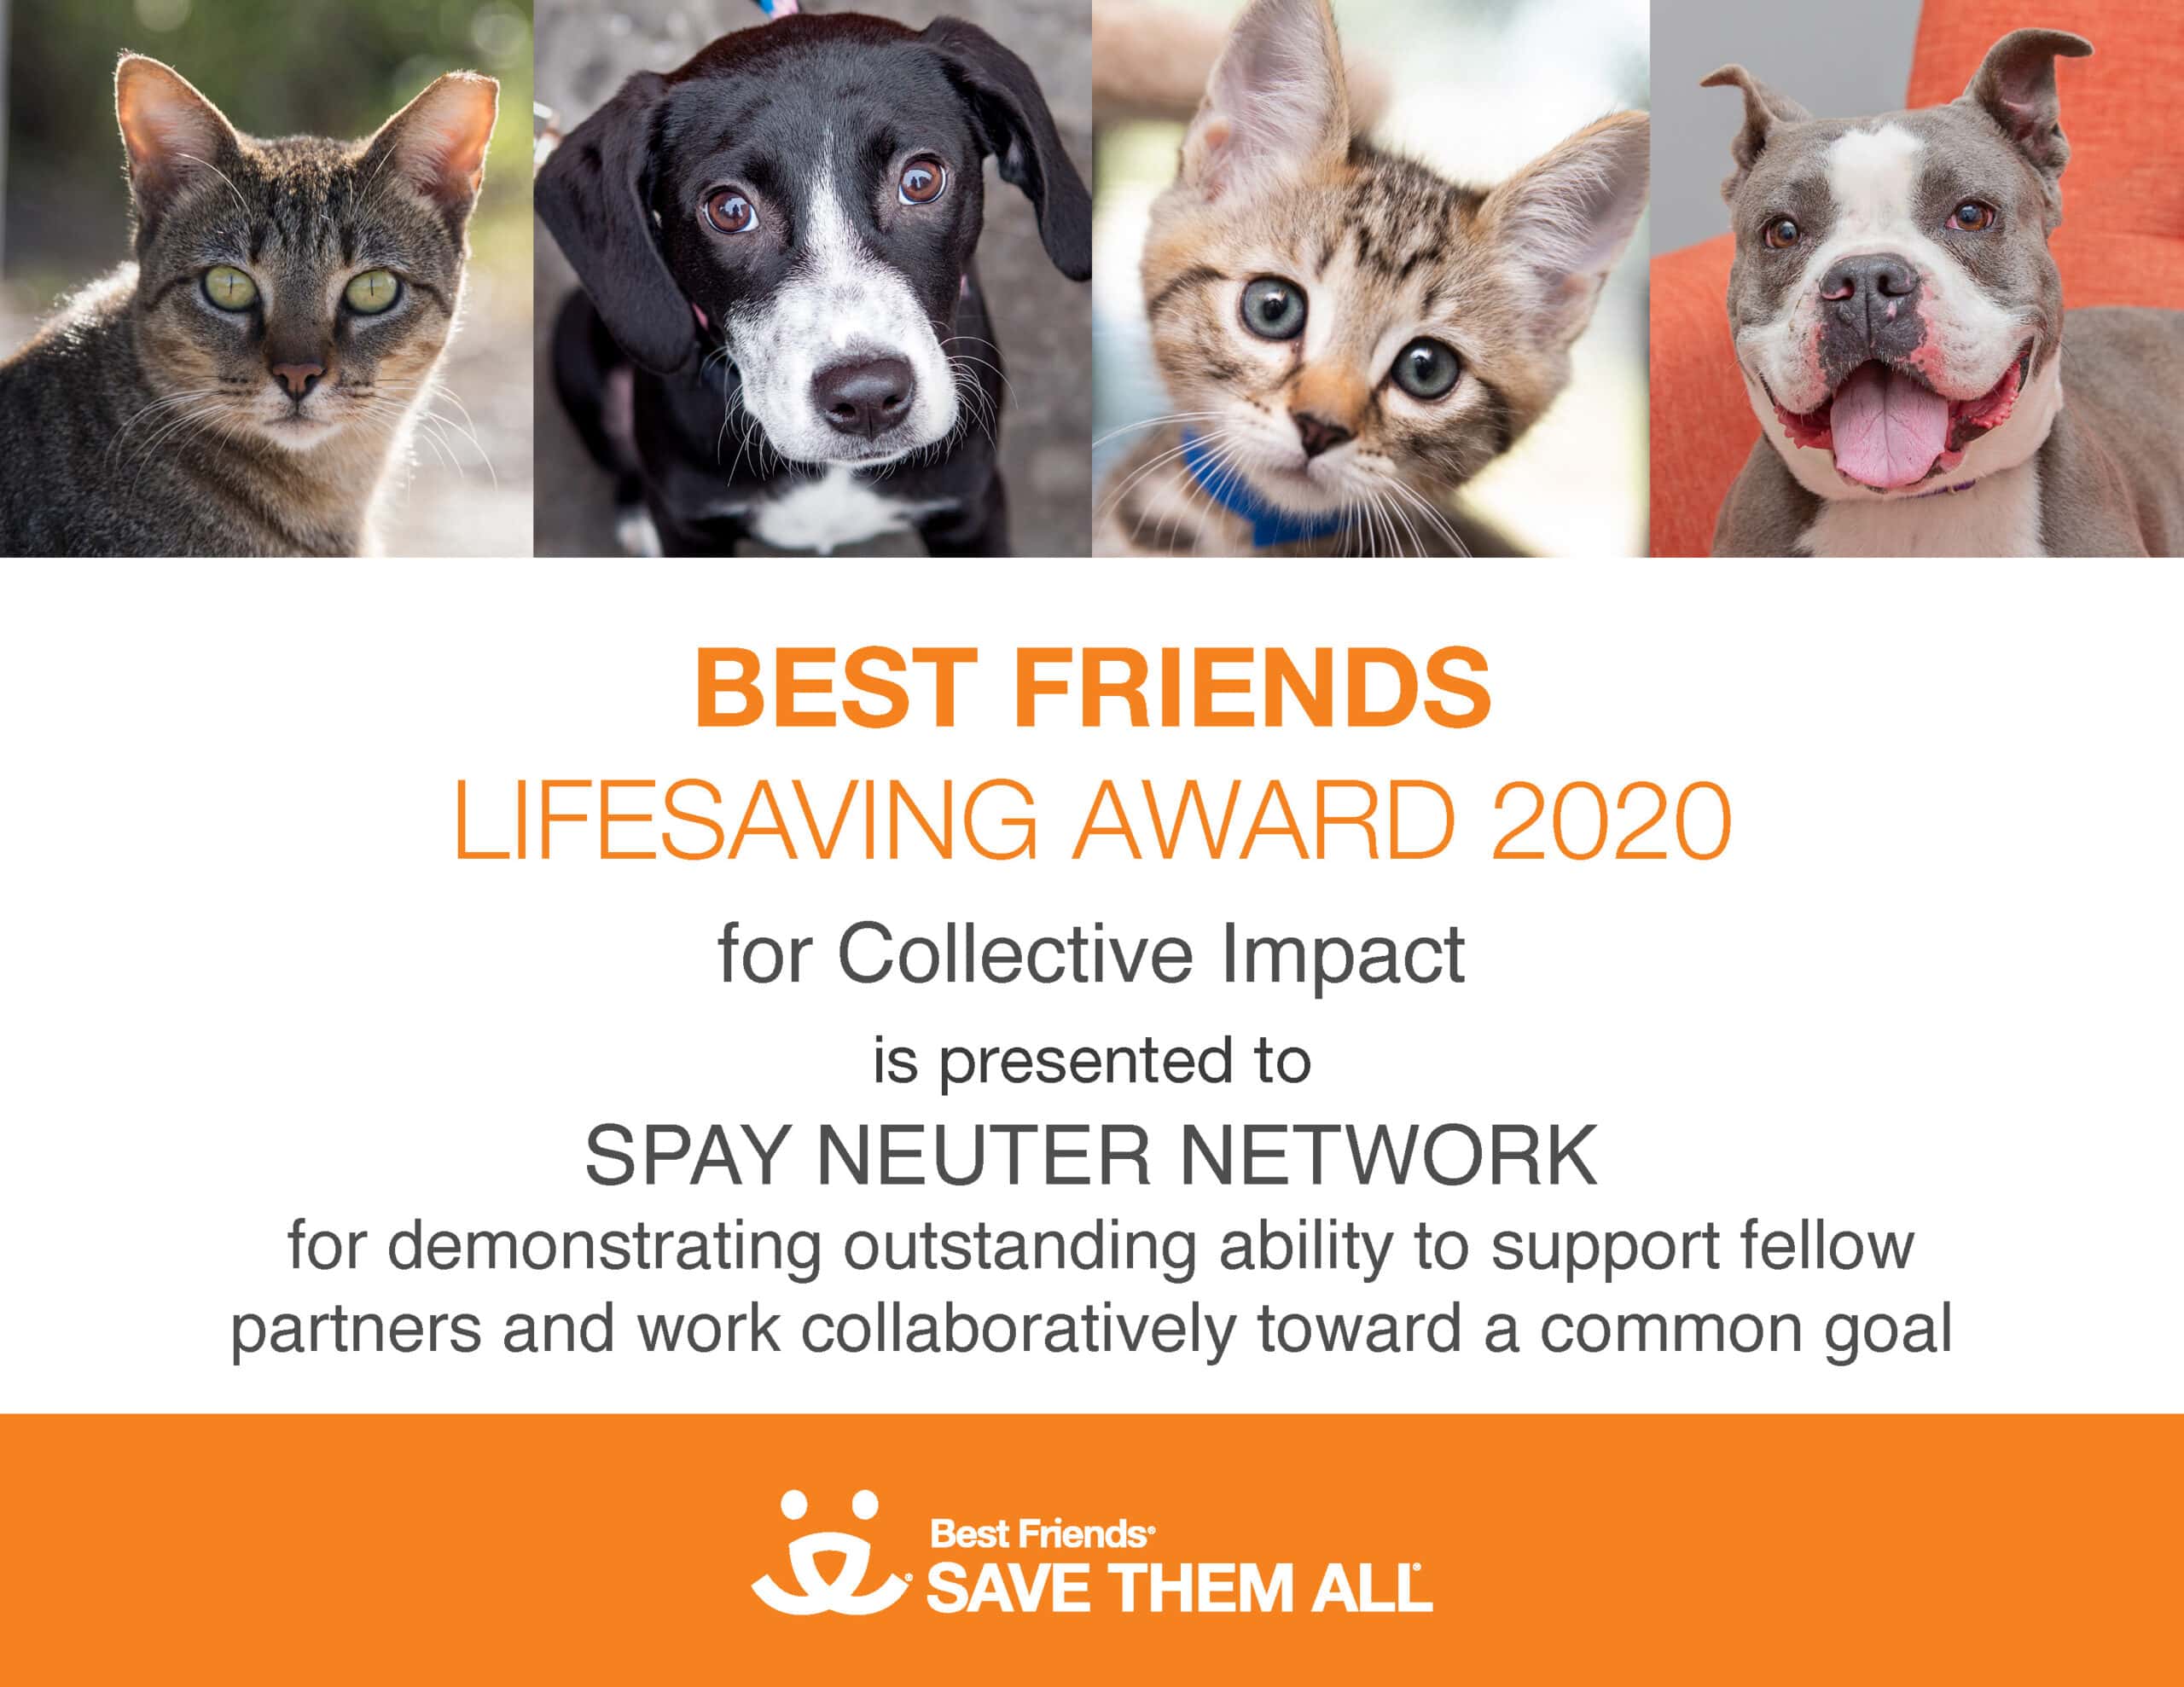 Best friends lifesaving award